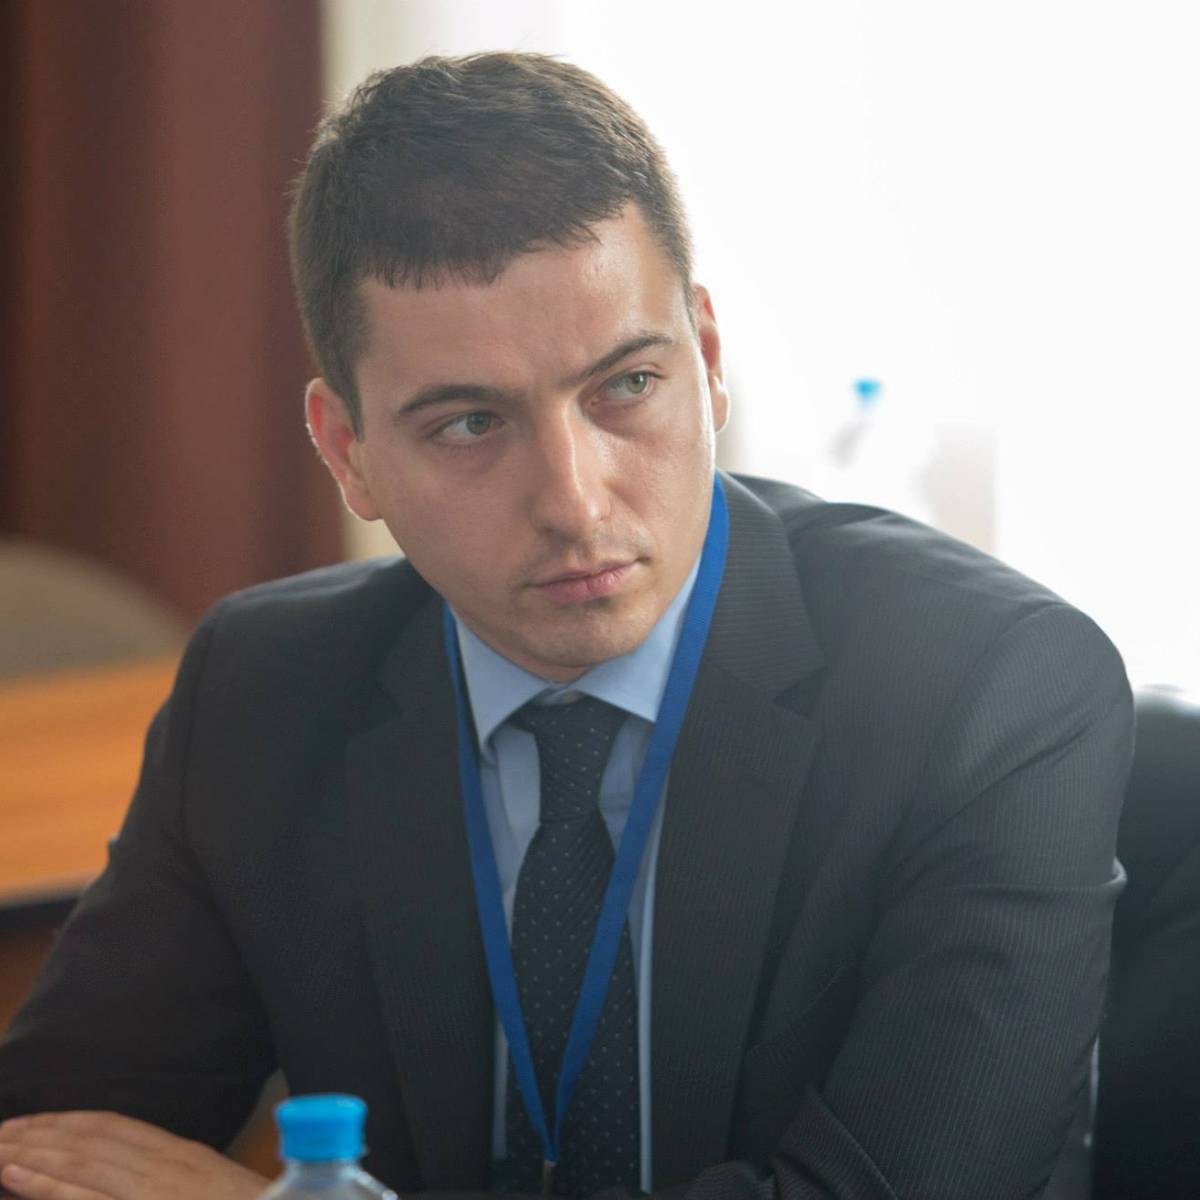 Стеван Гайич: По вопросу Косово Белград может надеется на Россию